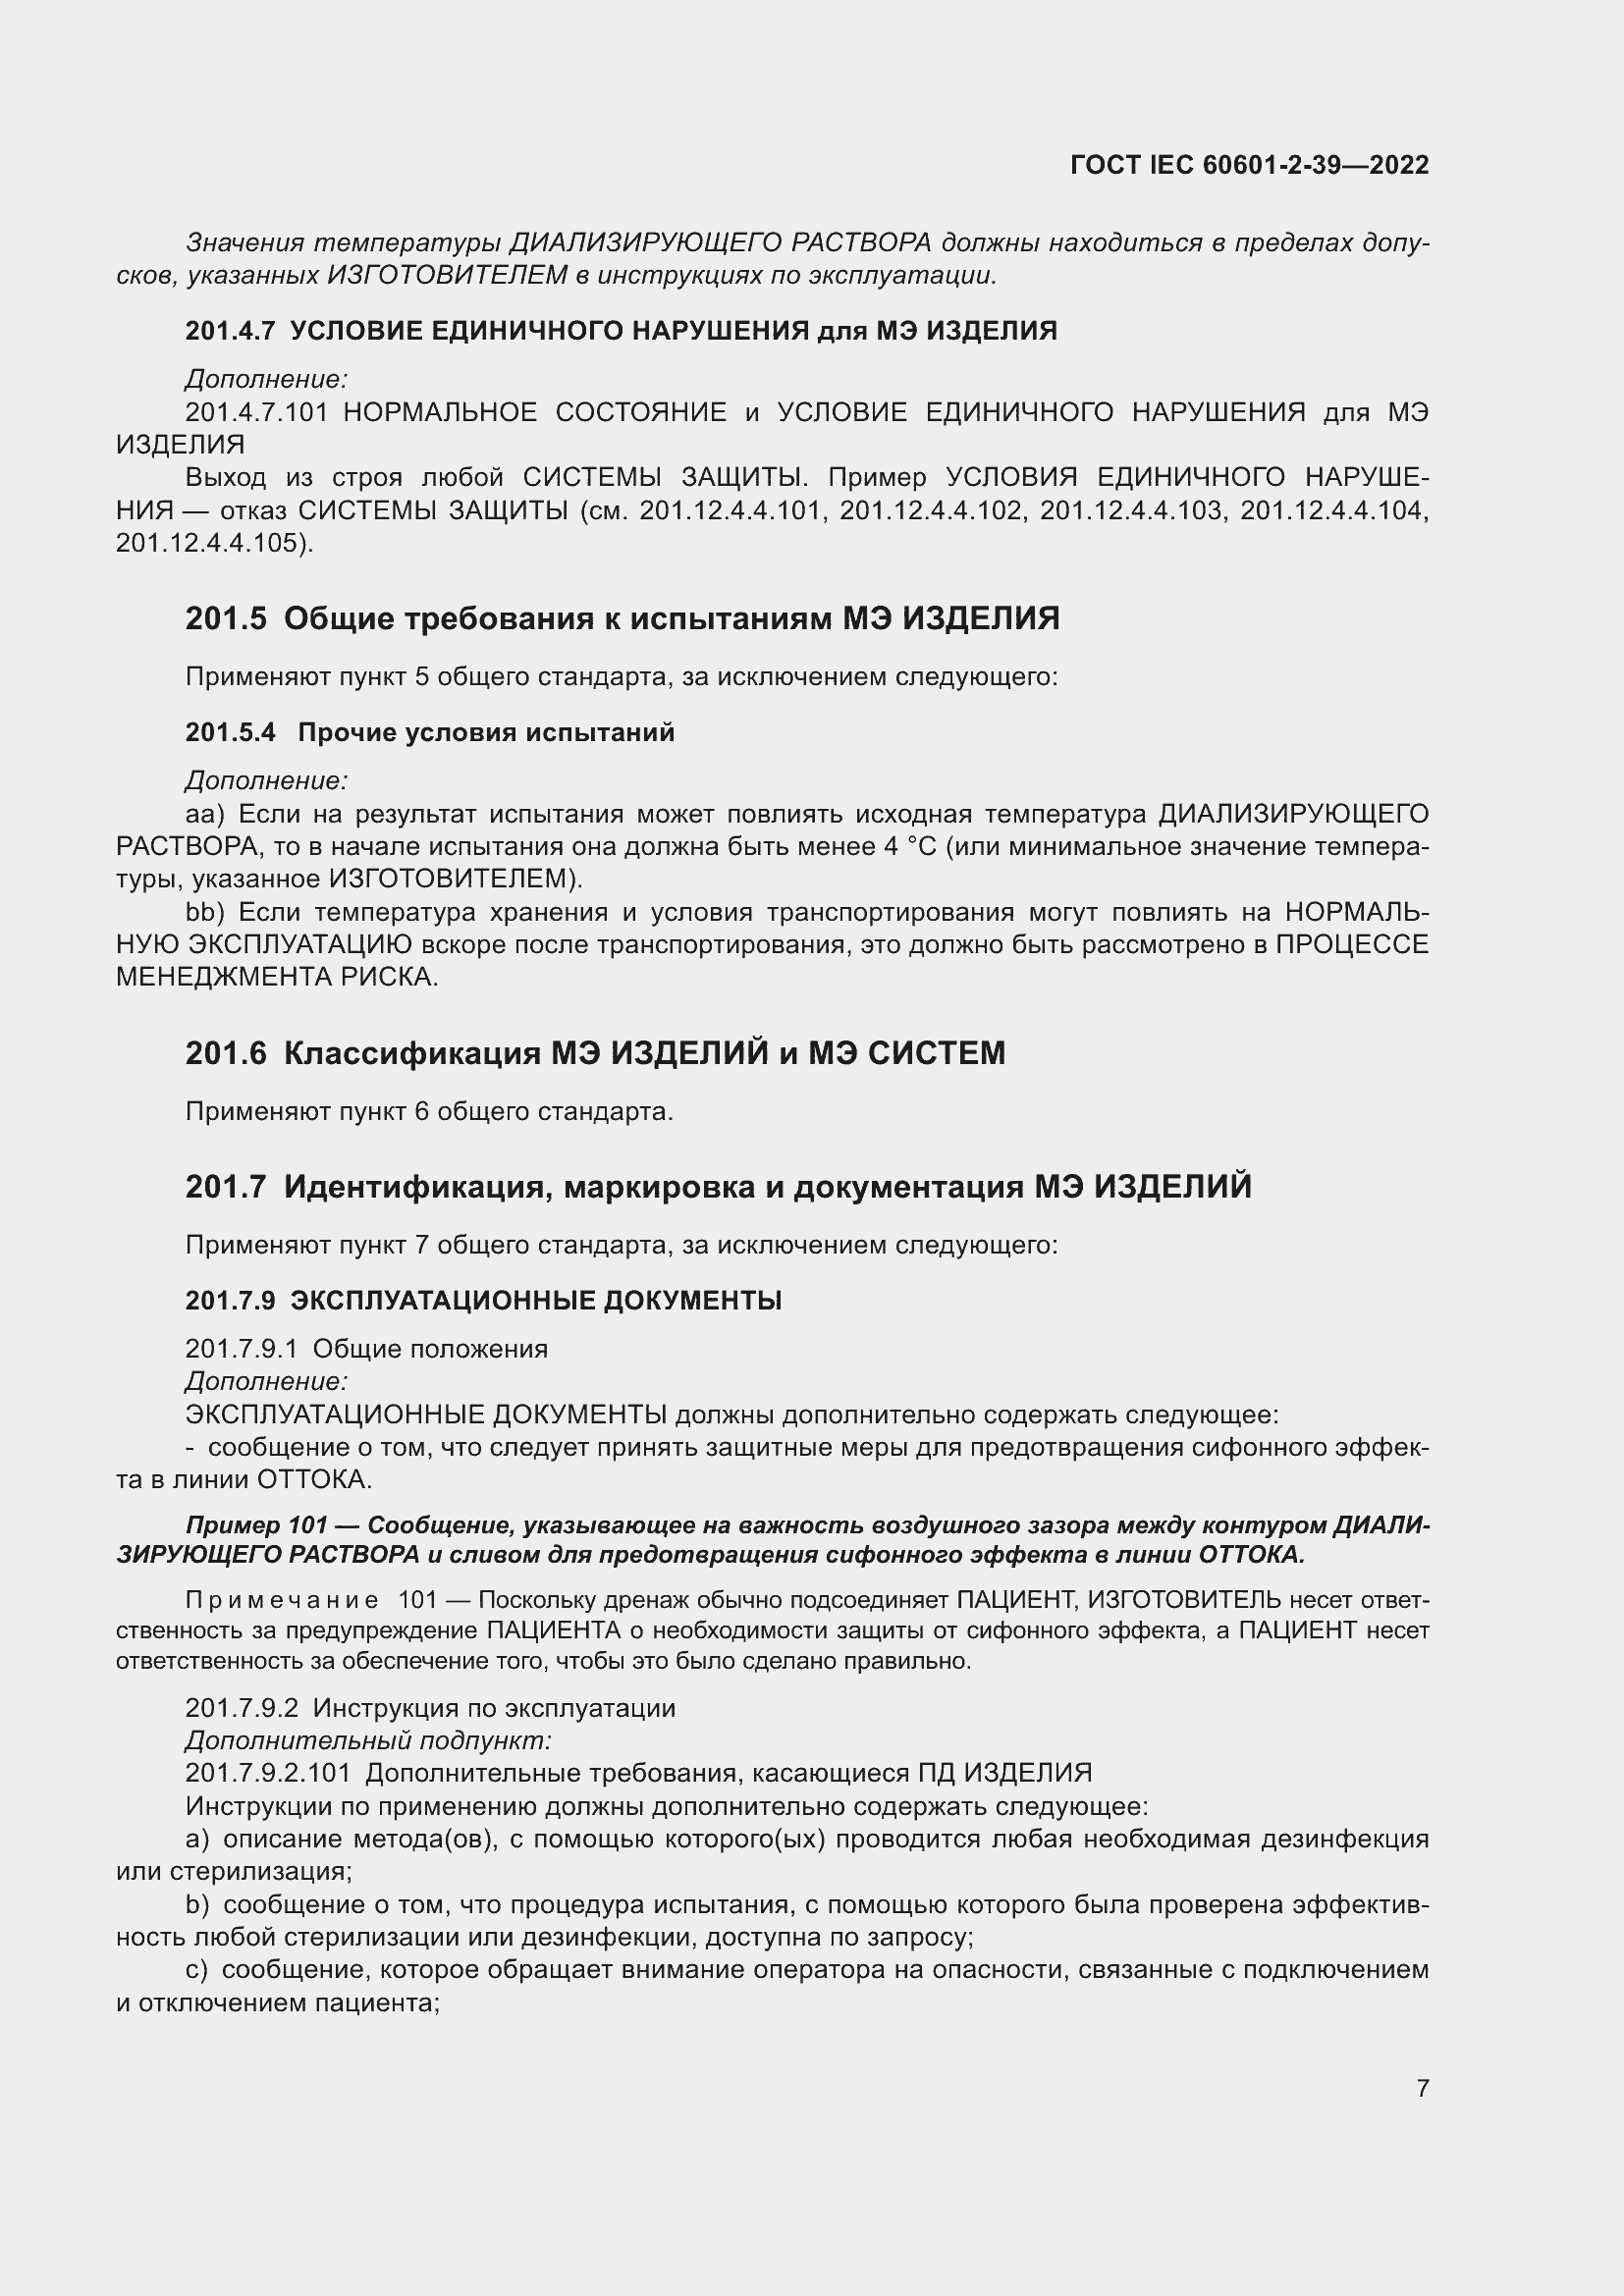  IEC 60601-2-39-2022.  13